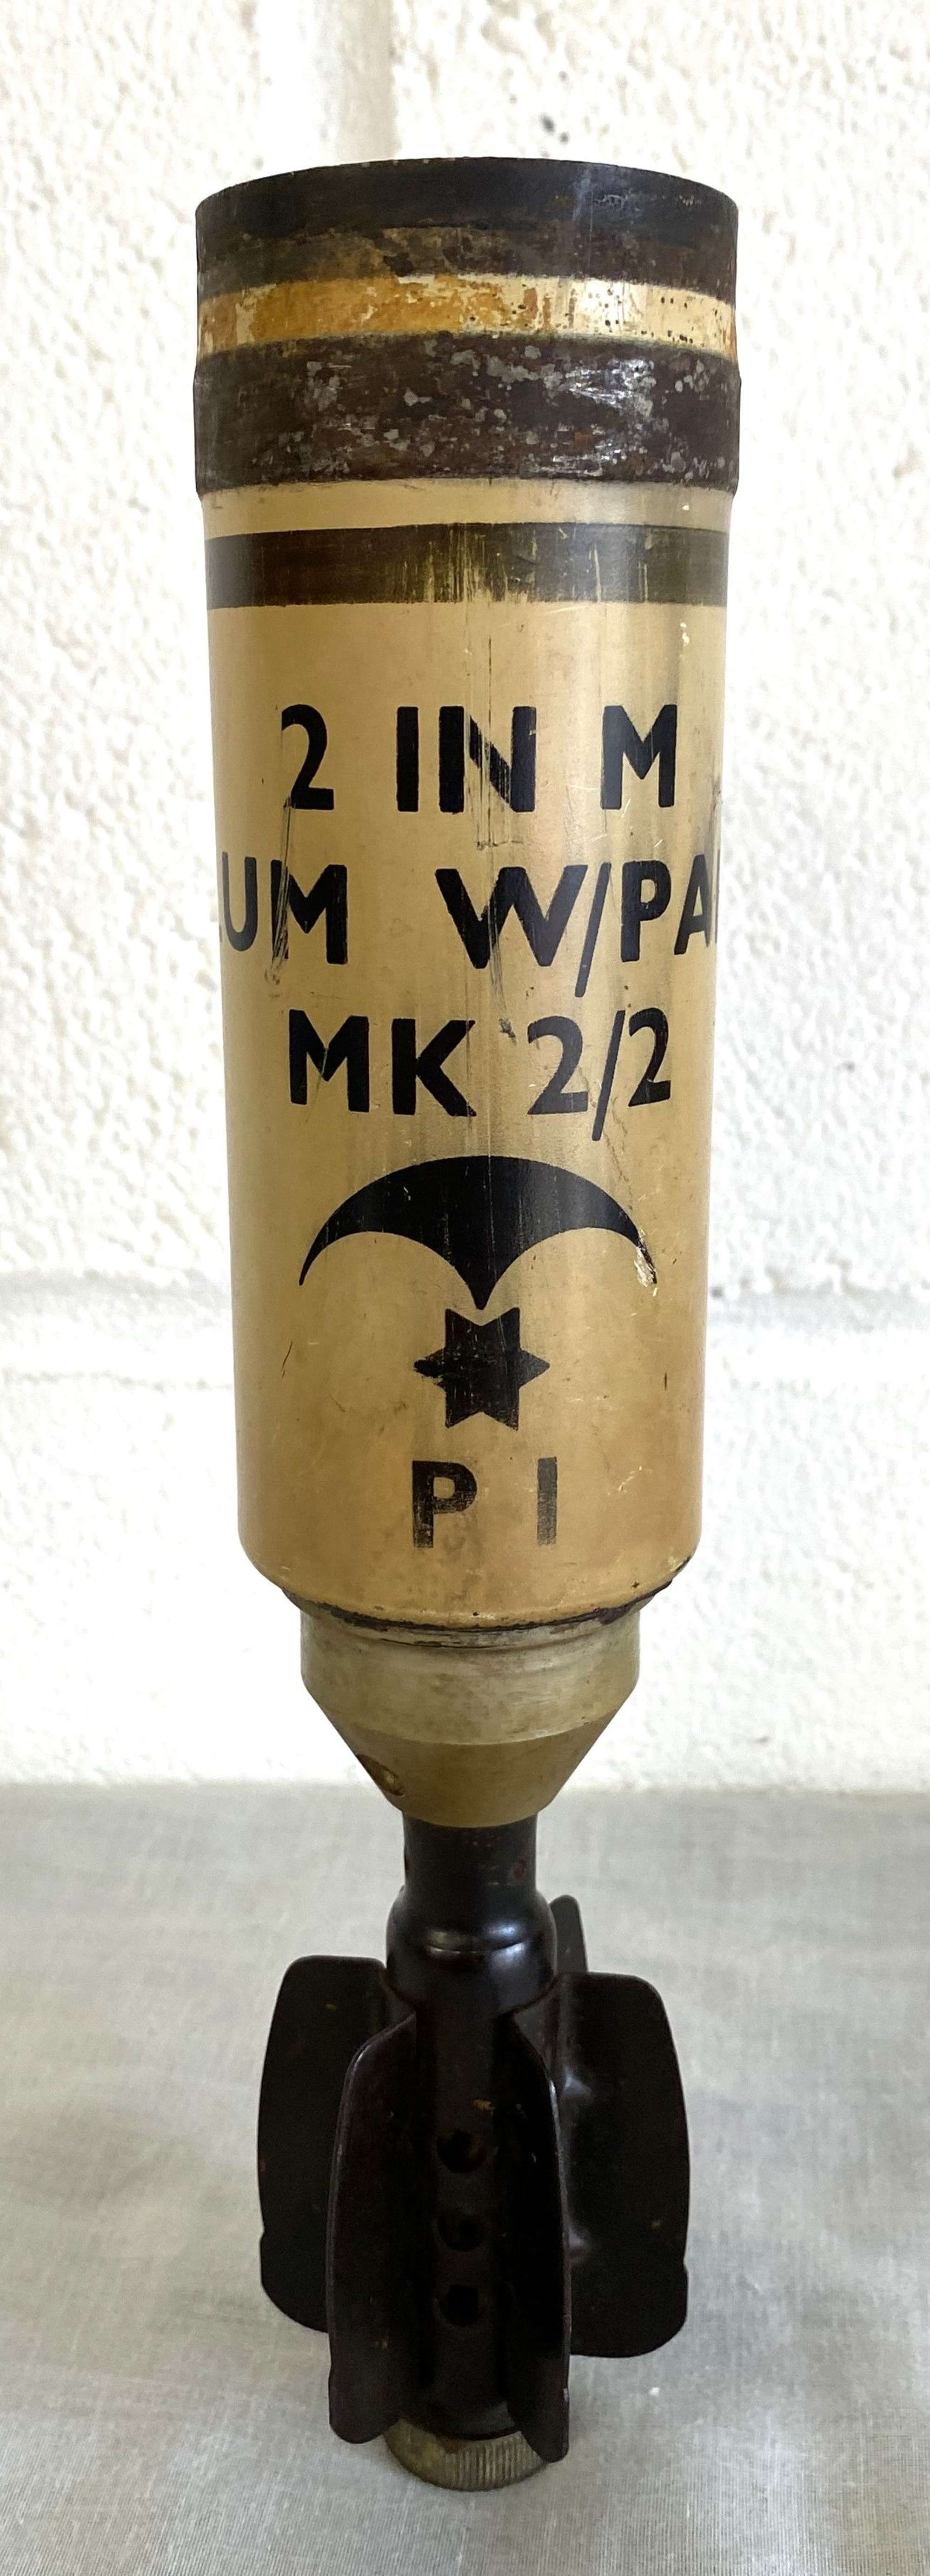 British Military Issue Inert Illumination Parachute Mortar Grenade Round, Dated 12/65